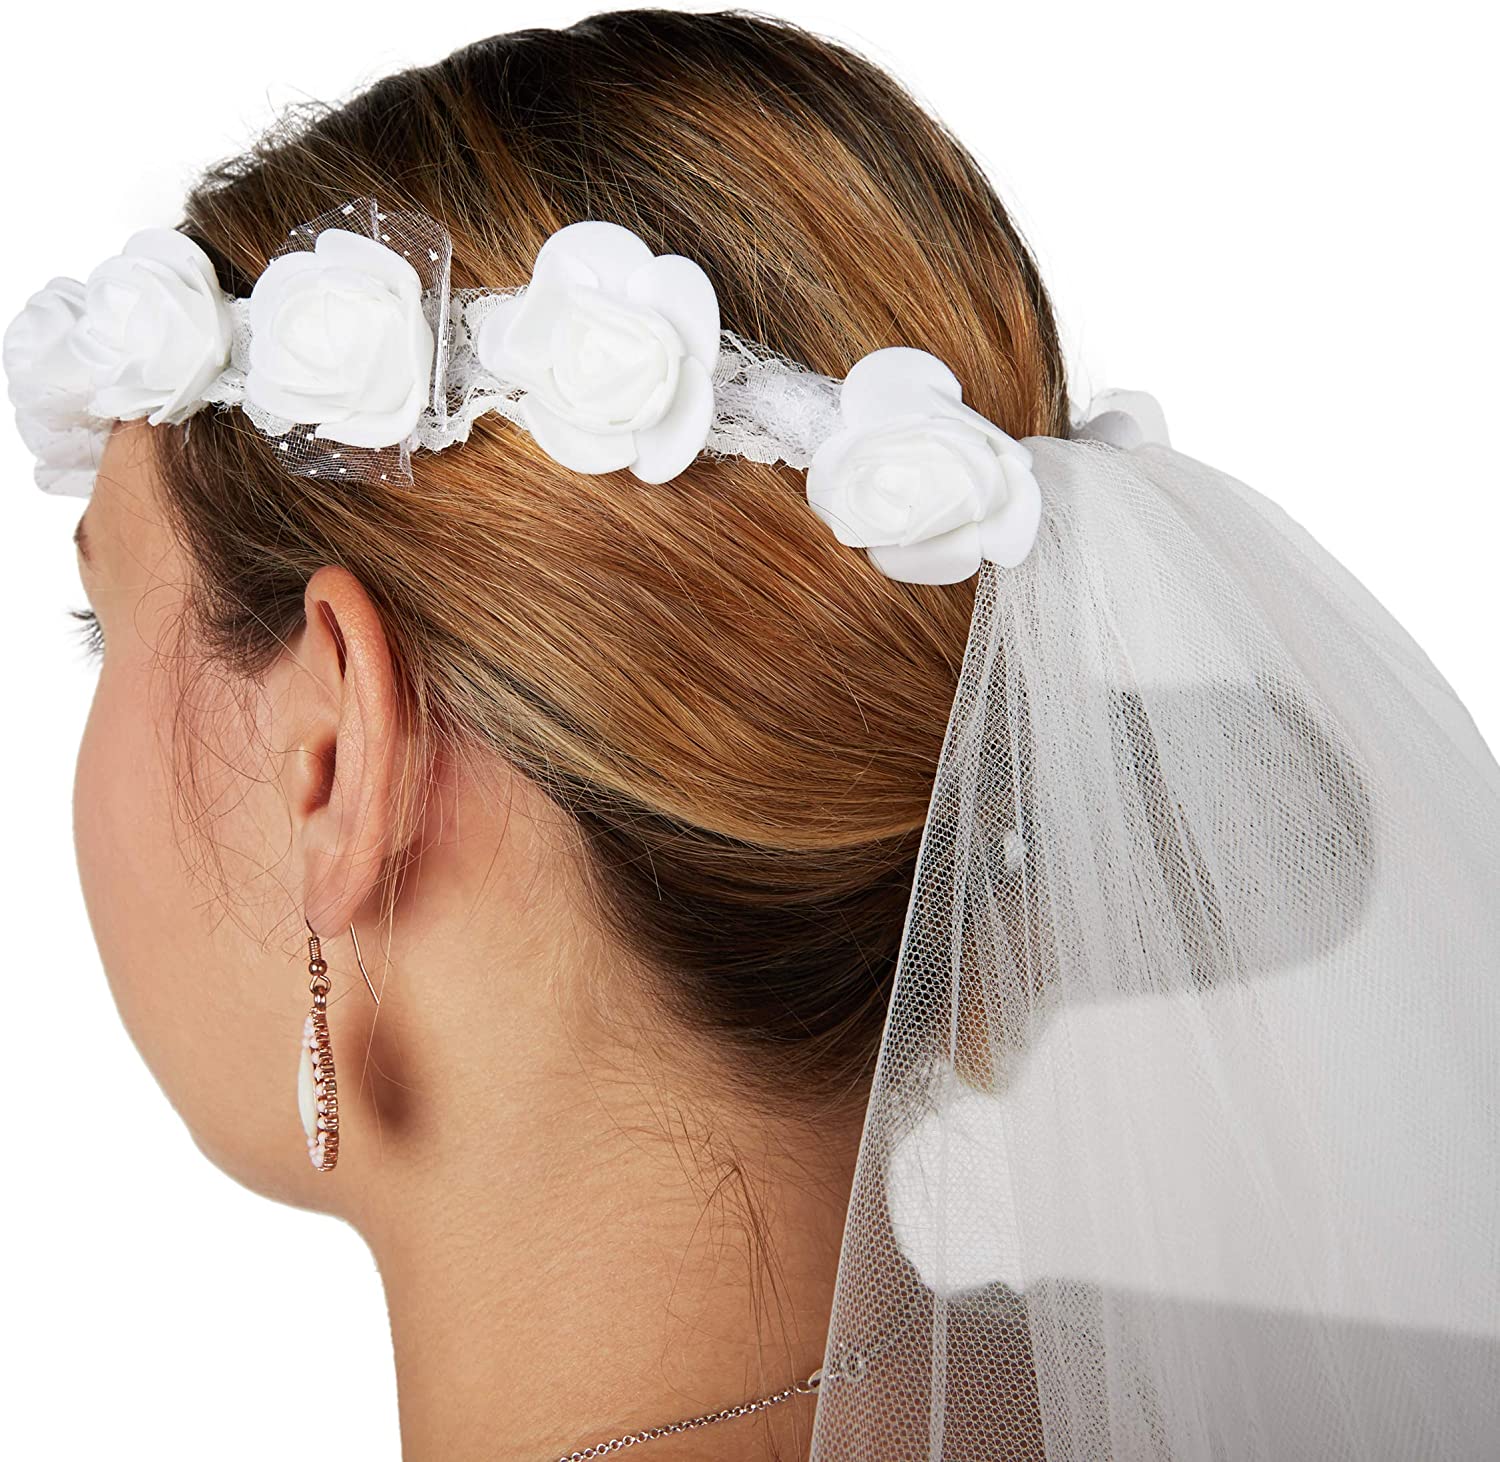 Beyond Masquerade Flower Crown Brides Veil Headband Floral Headpiece Bride Headpiece Cosplay White Veil